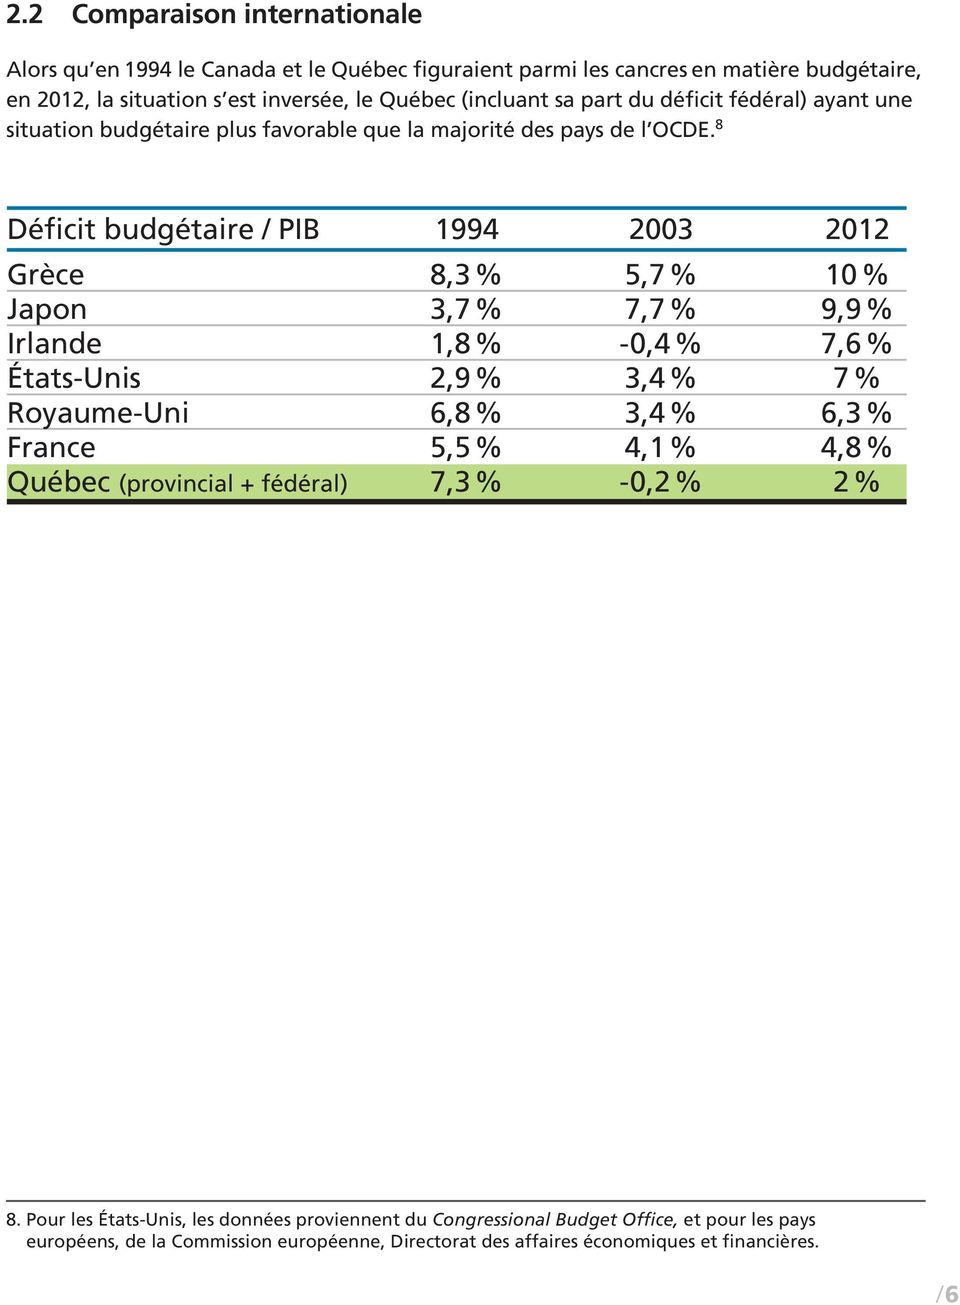 8 Déficit budgétaire / PIB 1994 2003 2012 Grèce 8,3 % 5,7 % 10 % Japon 3,7 % 7,7 % 9,9 % Irlande 1,8 % -0,4% 7,6 % États-Unis 2,9 % 3,4 % 7 % Royaume-Uni 6,8 % 3,4 % 6,3 % France